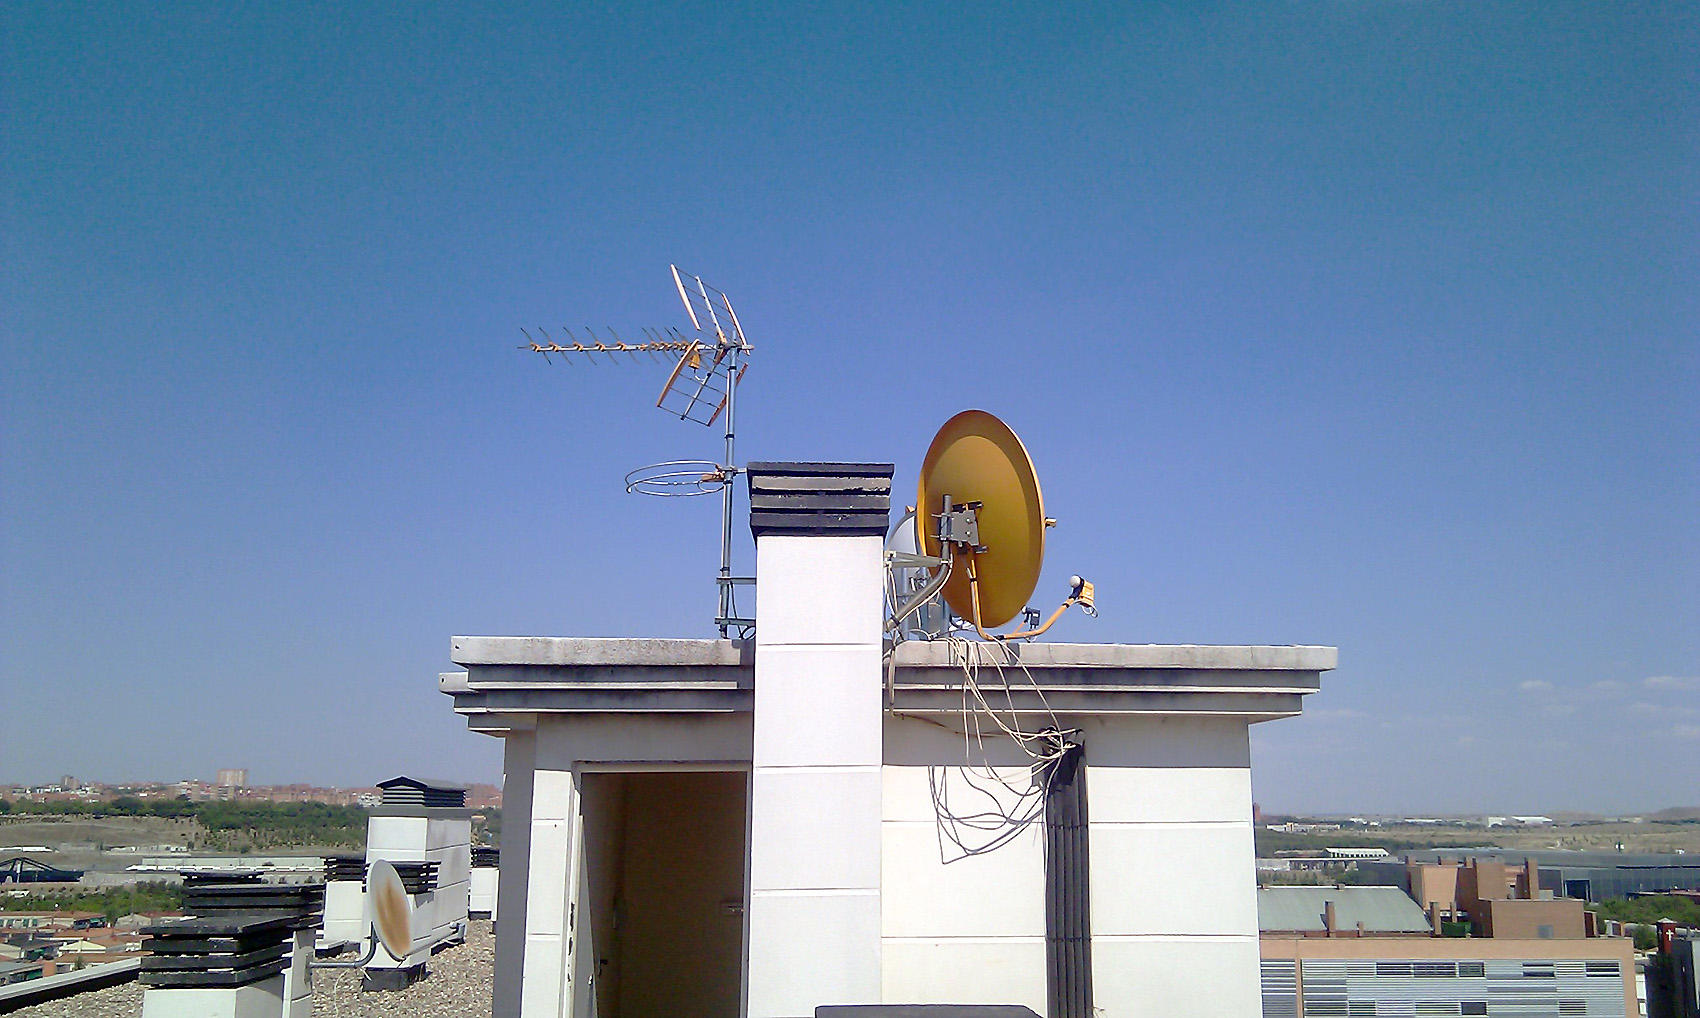 Images Sbs Telecomunicaciones